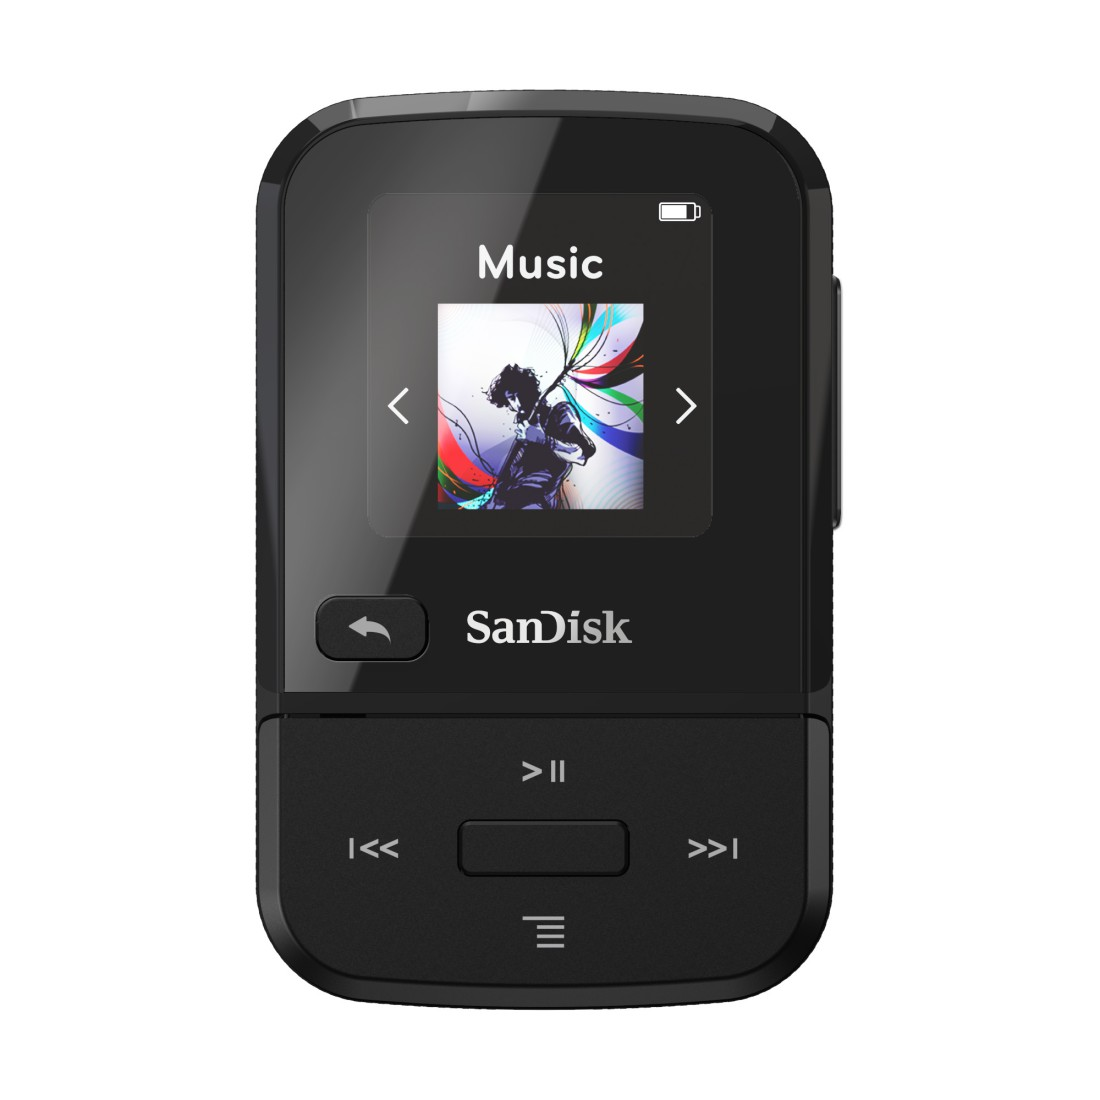 SANDISK Clip Sport Go Schwarz) (16 GB, Player MP3